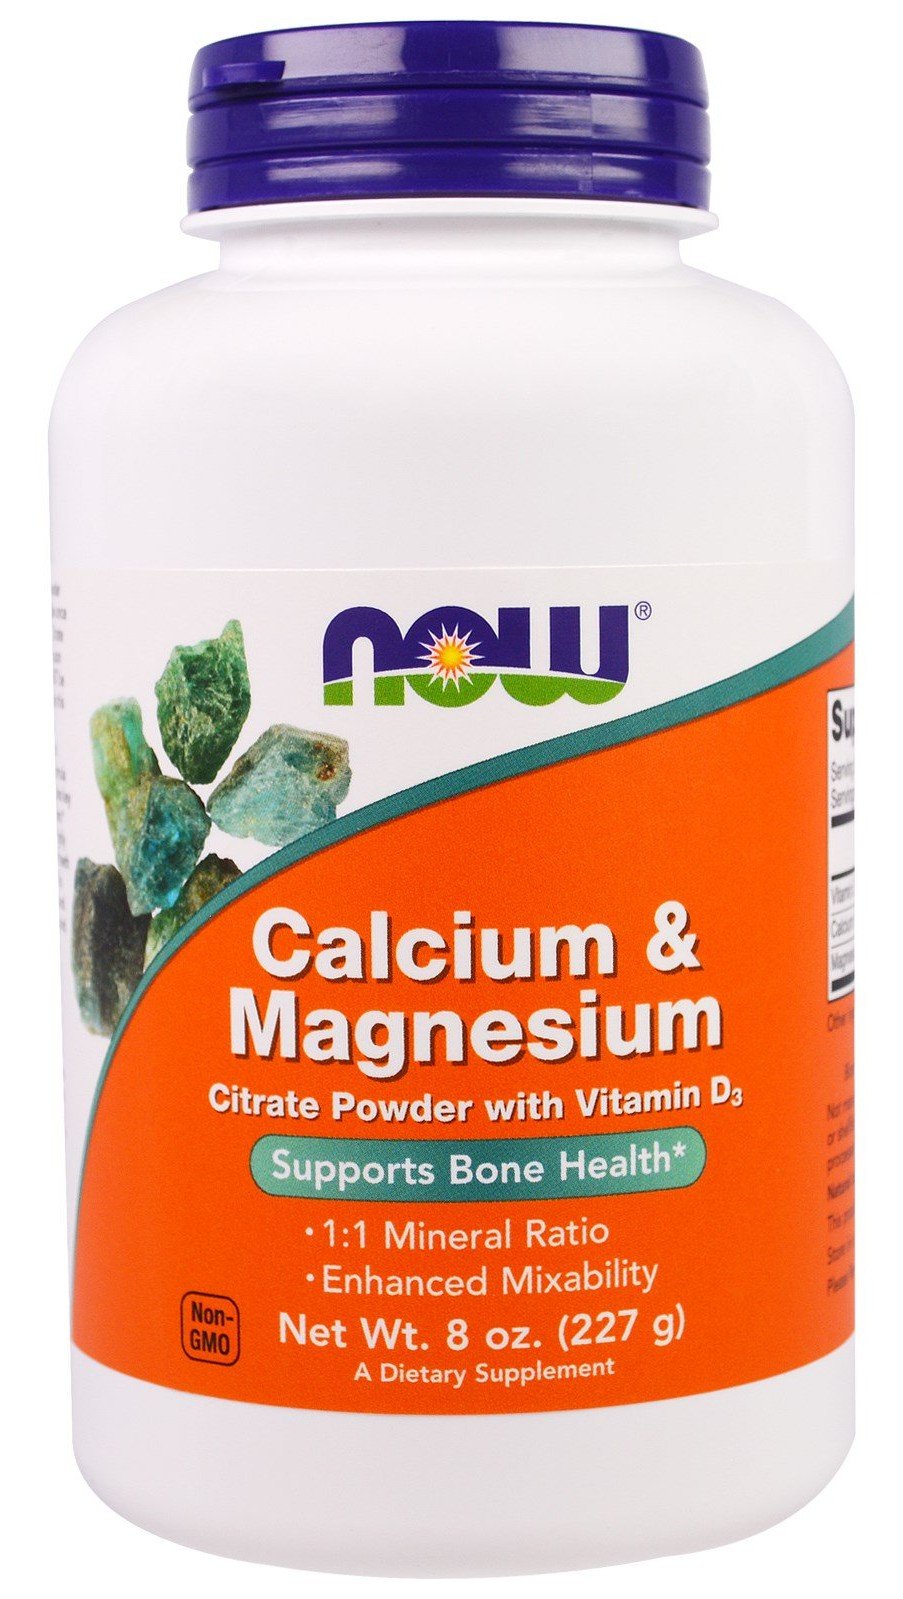 Calcium & Magnesium, 227 g, Now. Calcium Ca. 